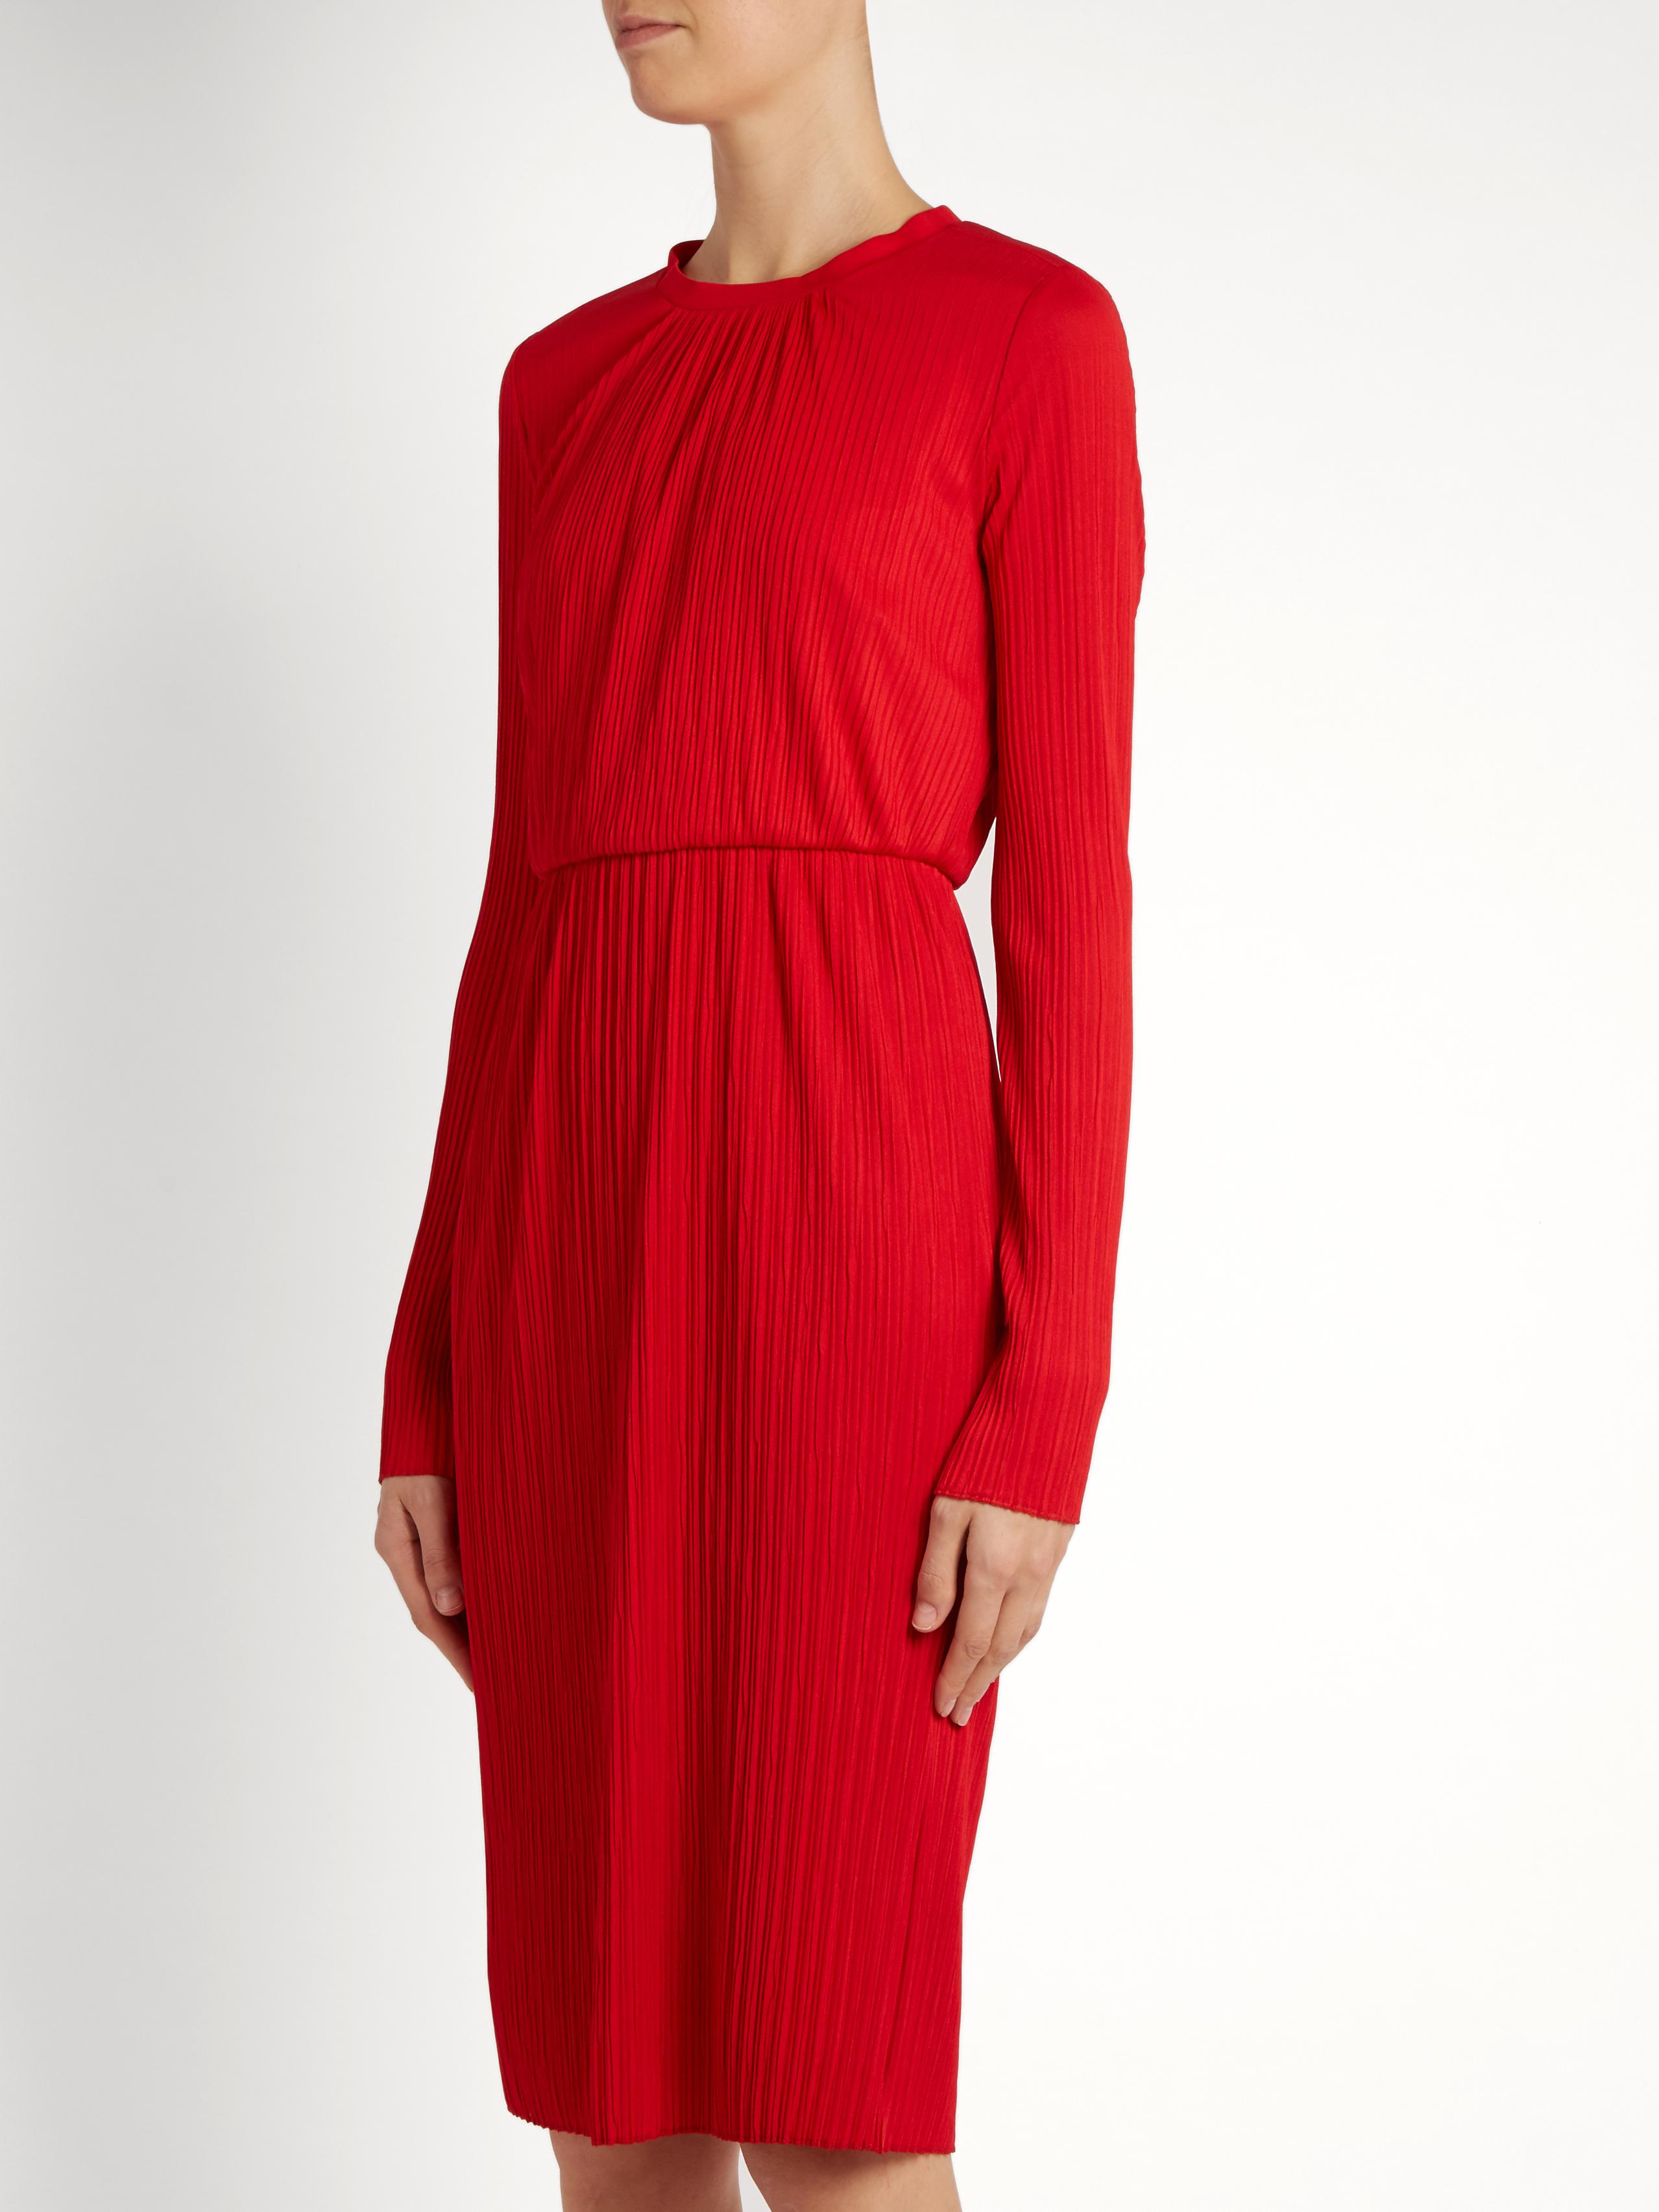 Lyst - Max Mara Xiria Dress in Red